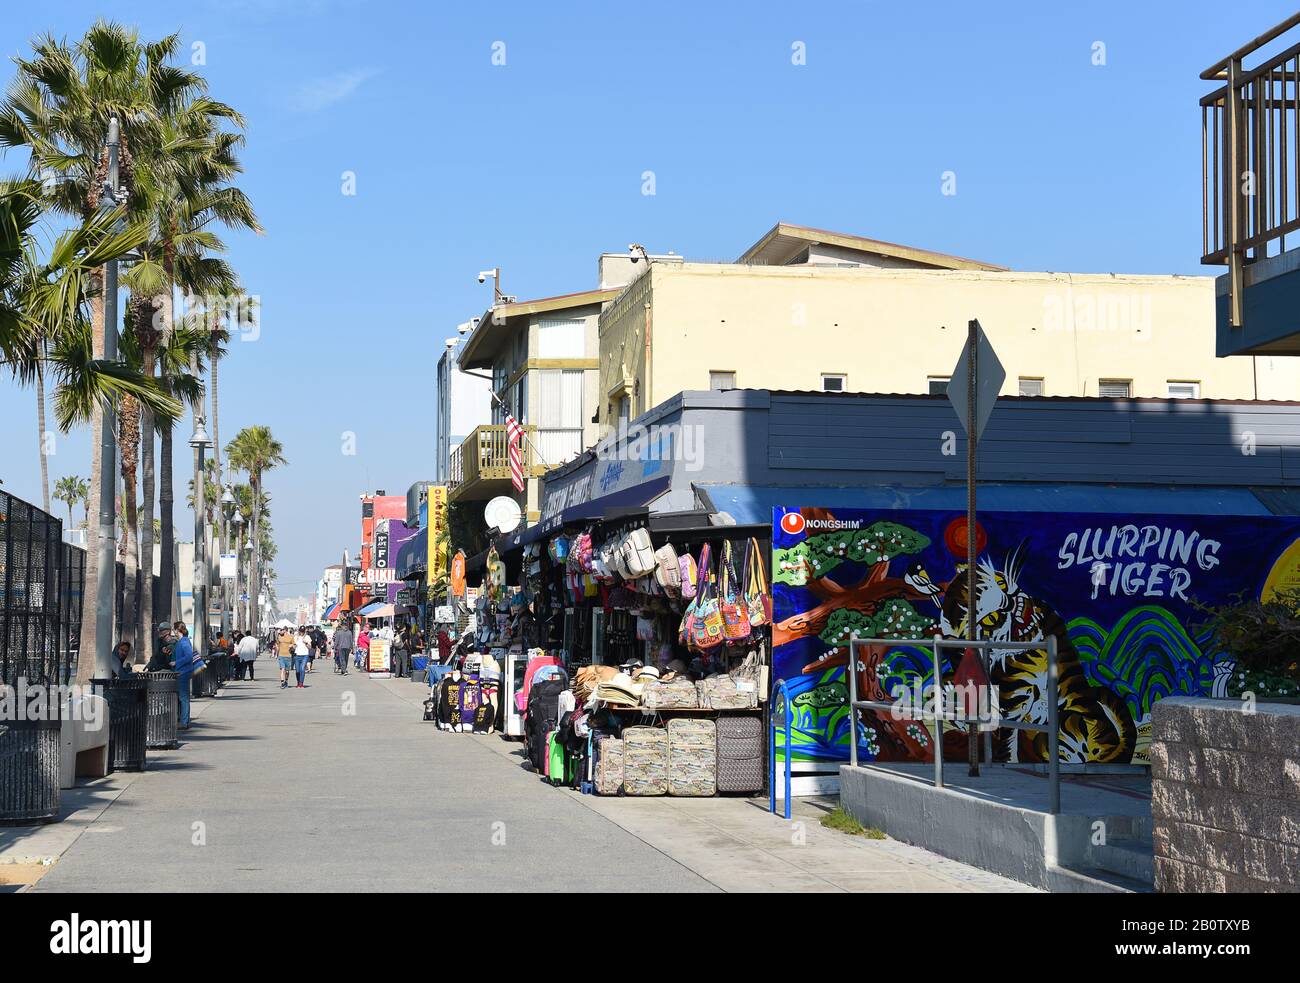 Venezia, CALIFORNIA - 17 FEB 2020: Negozi e venditori sul lungomare presso la popolare attrazione turistica della California del Sud. Foto Stock